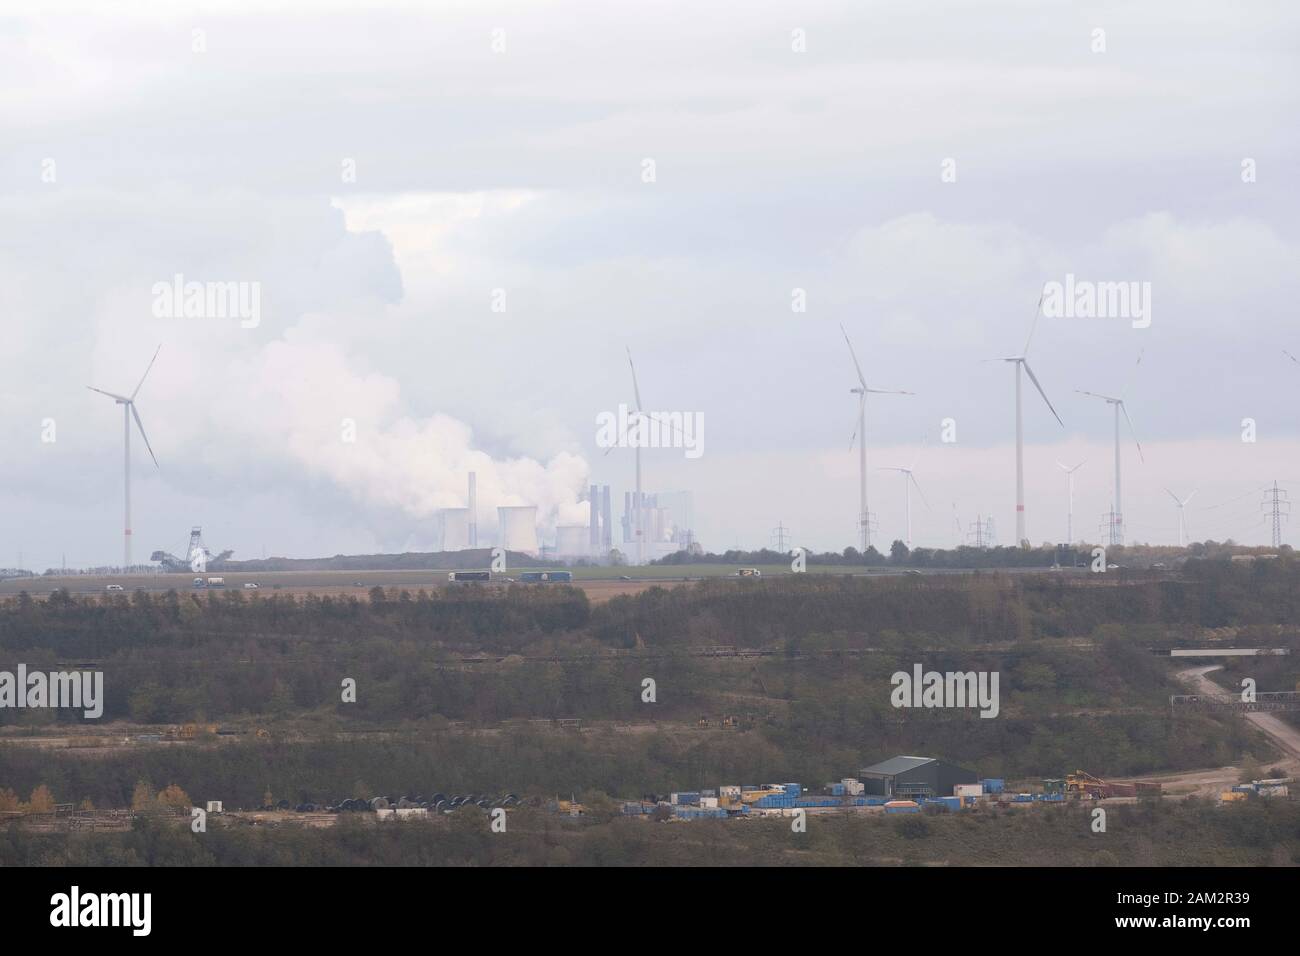 Mina de carbón a cielo abierto, turbinas eólicas y chimeneas de fábrica por autopista, Garzweiller, Alemania Foto de stock